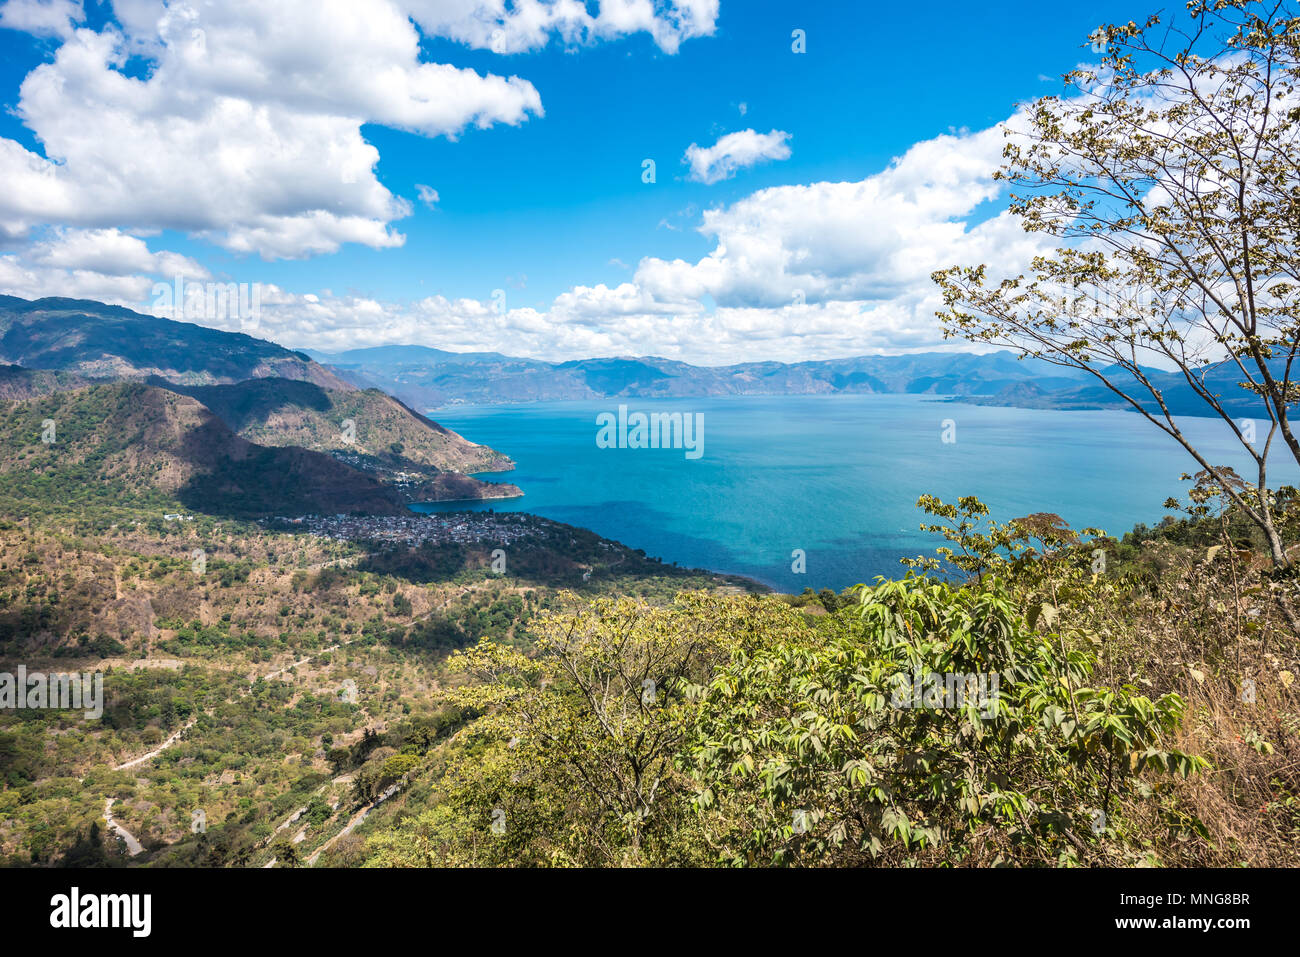 Punto di Vista a lago Atitlan - Vista per i piccoli borghi di San Marcos, Panajachel e San Marcos al lago negli altopiani del Guatemala Foto Stock